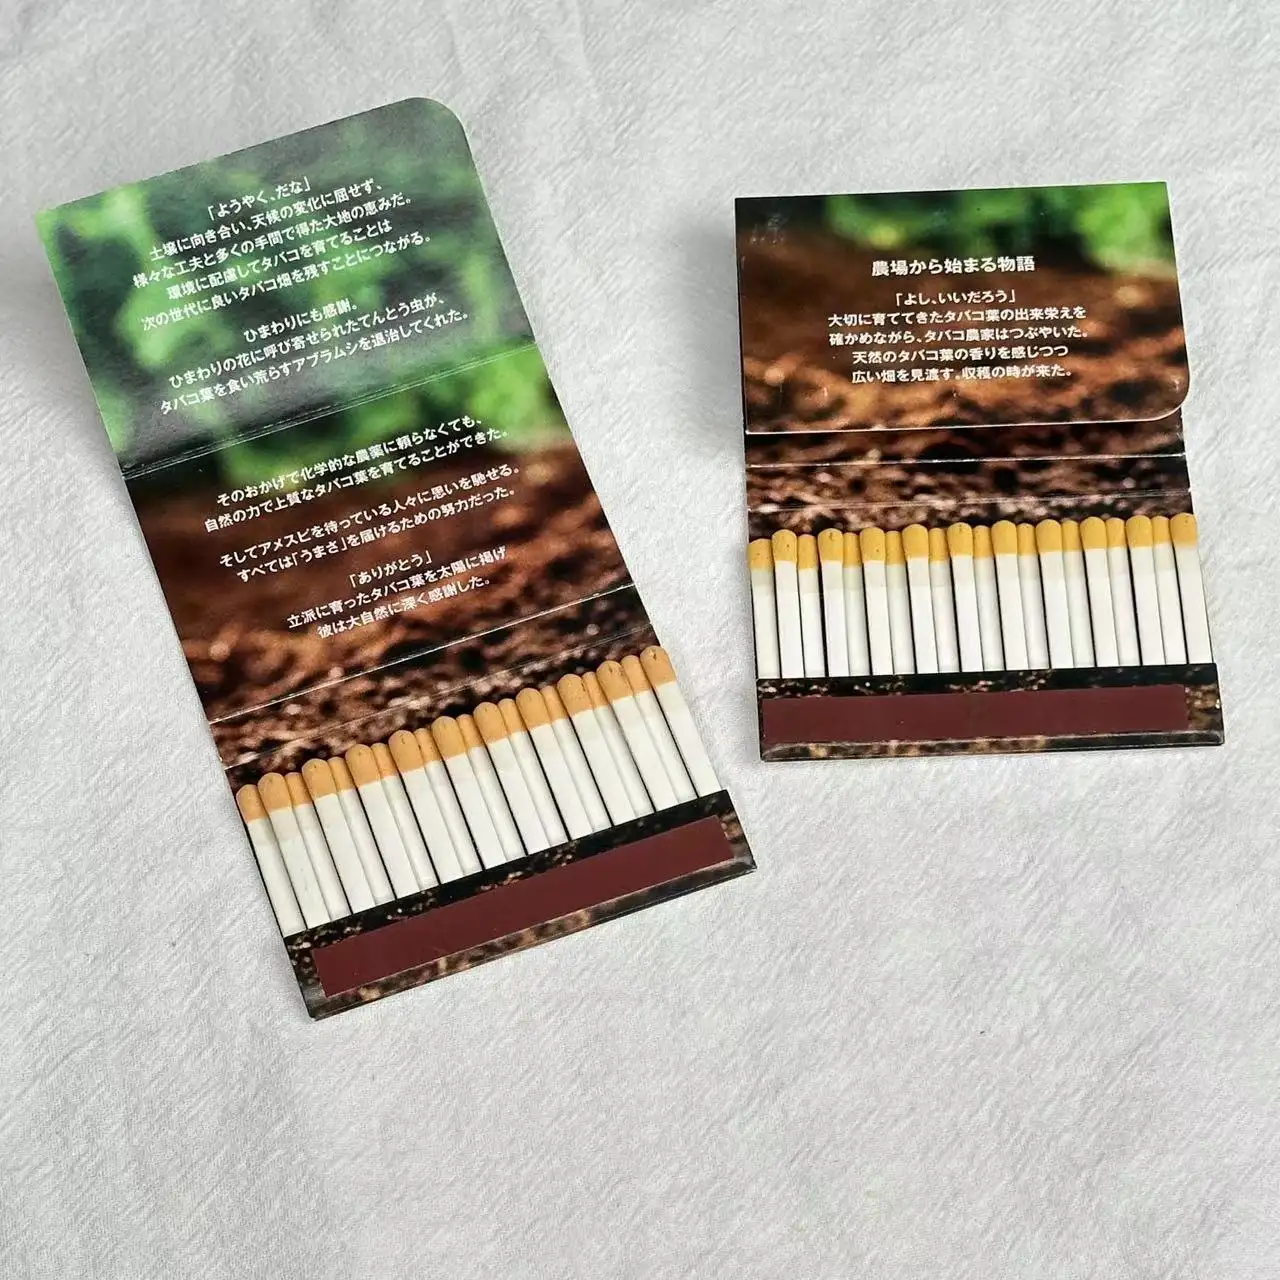 Verschiedene Streichholzspitzenfarben aufdrucklogo auf Streichholzen Design Streichholz für Zigarrenbox kundenspezifisches Streichholzbuch